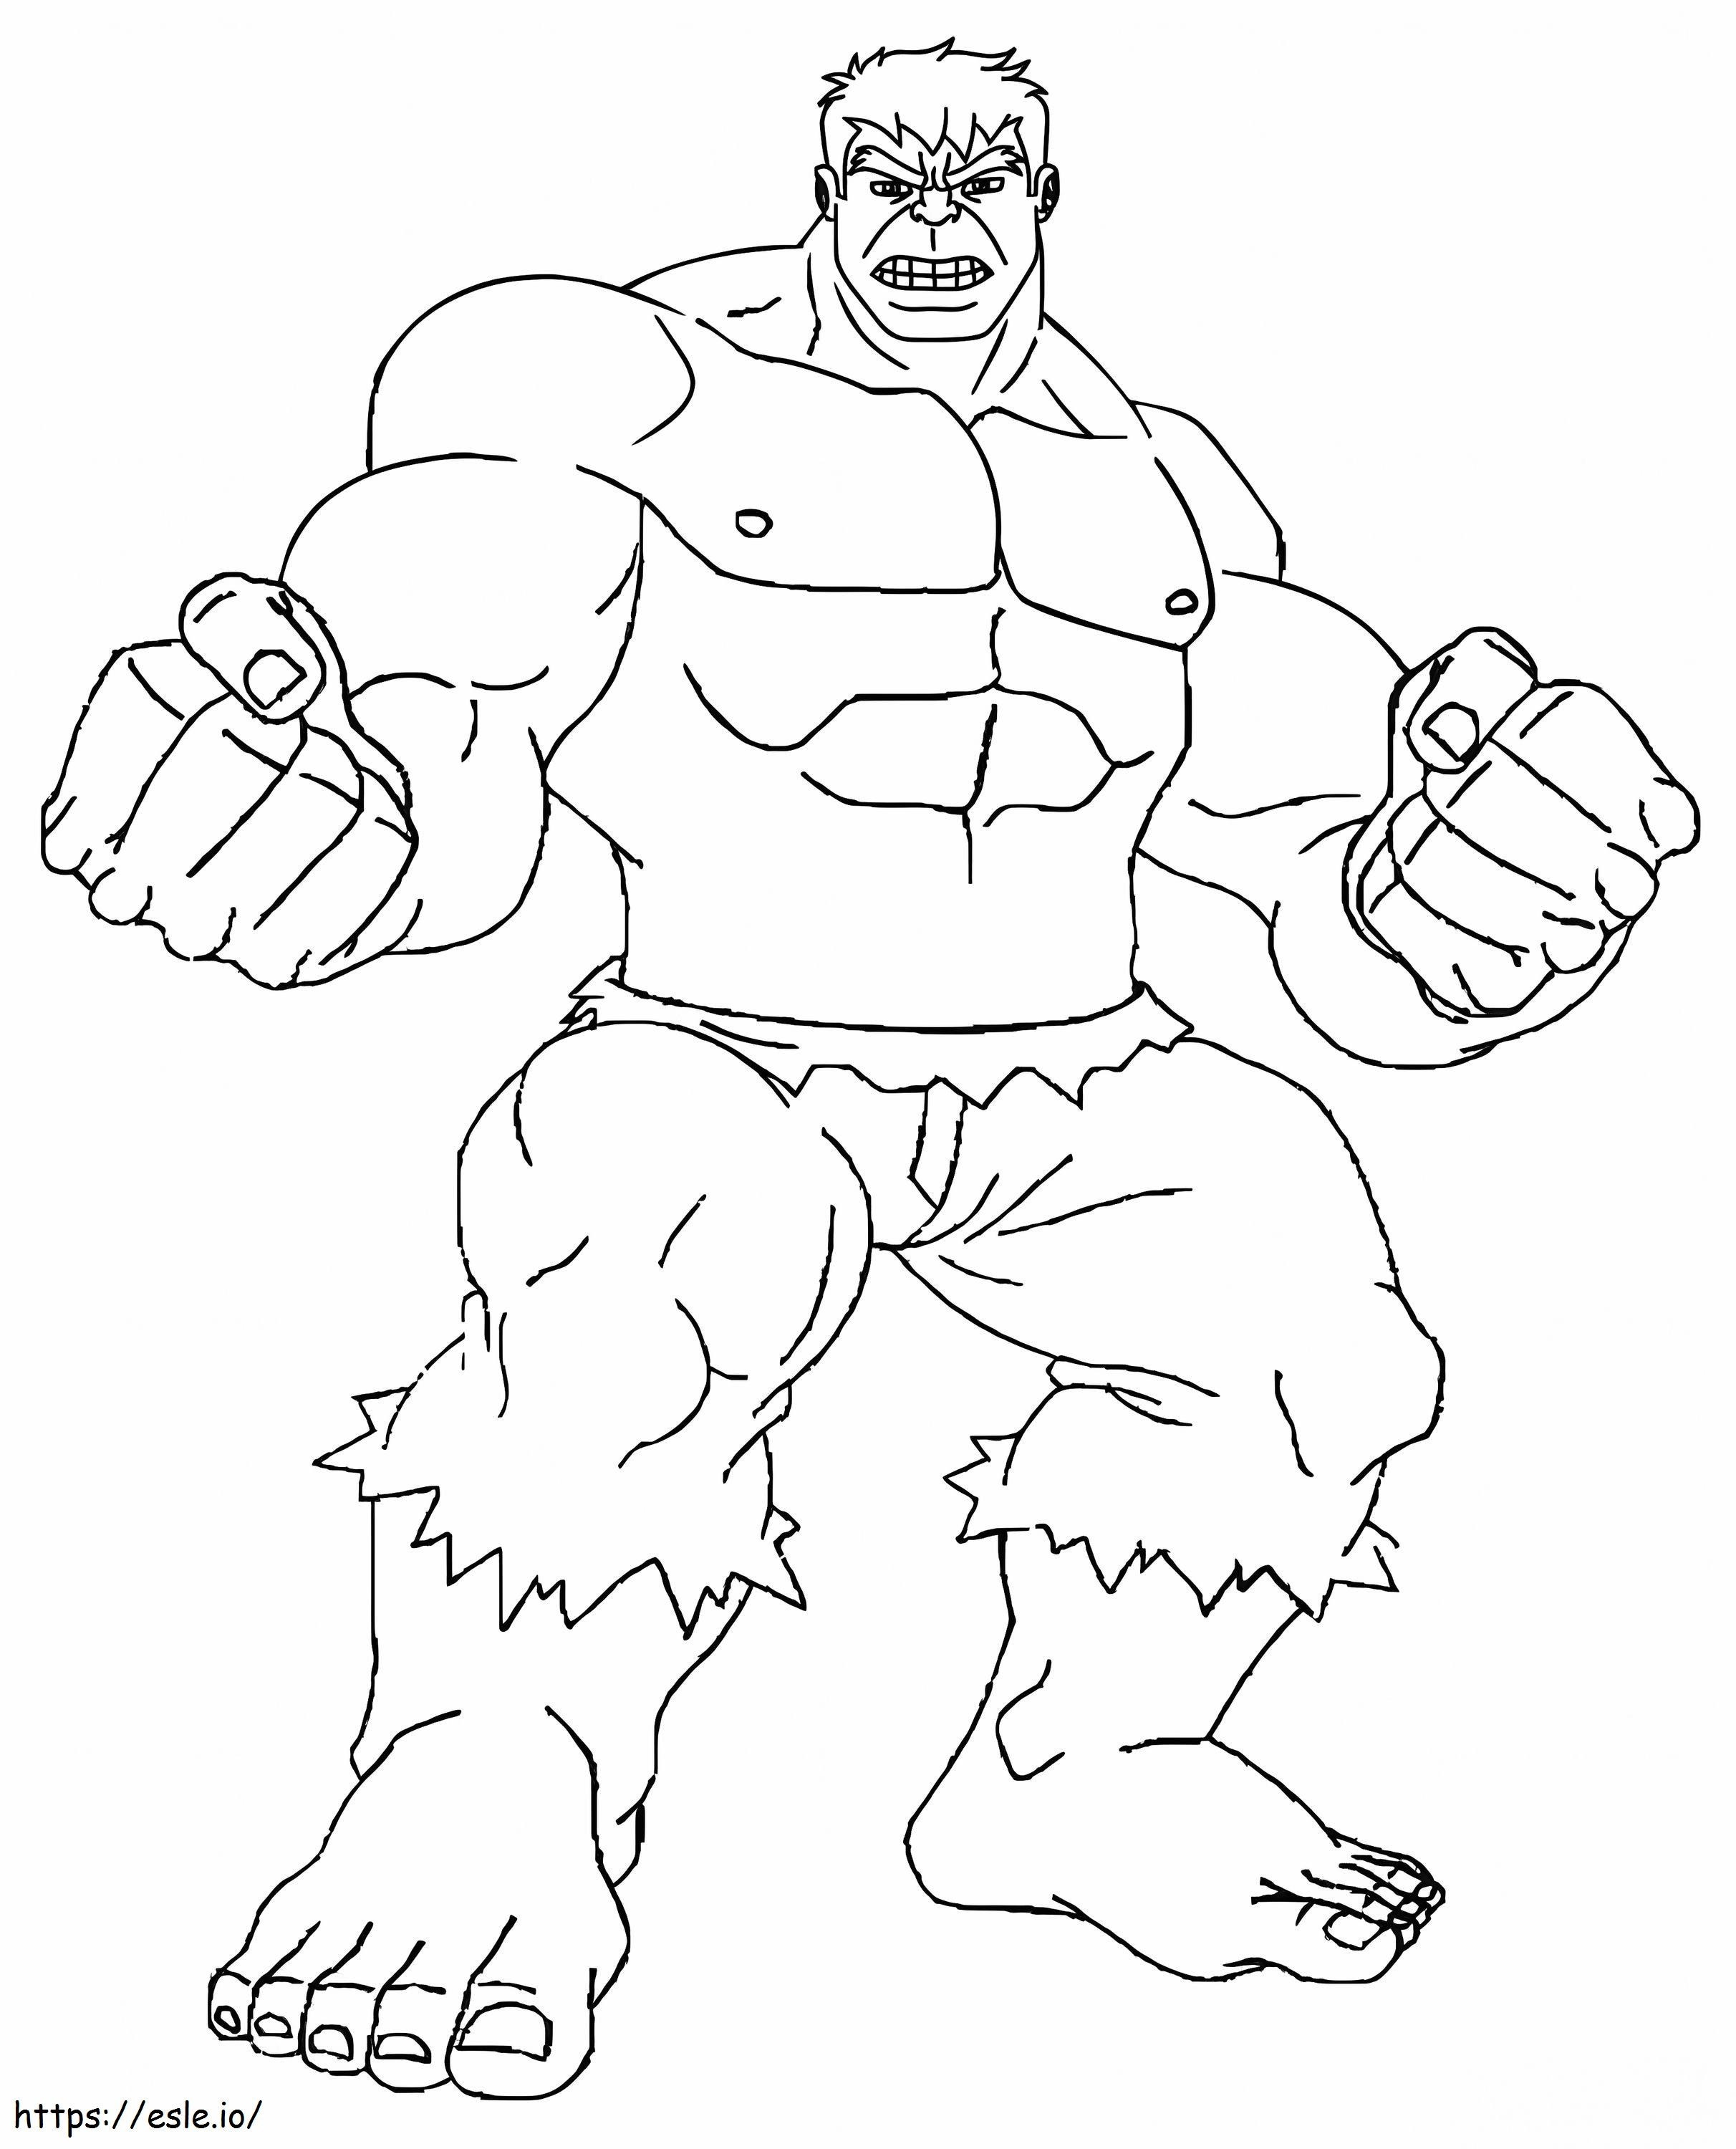 Hulk on erittäin vahva värityskuva